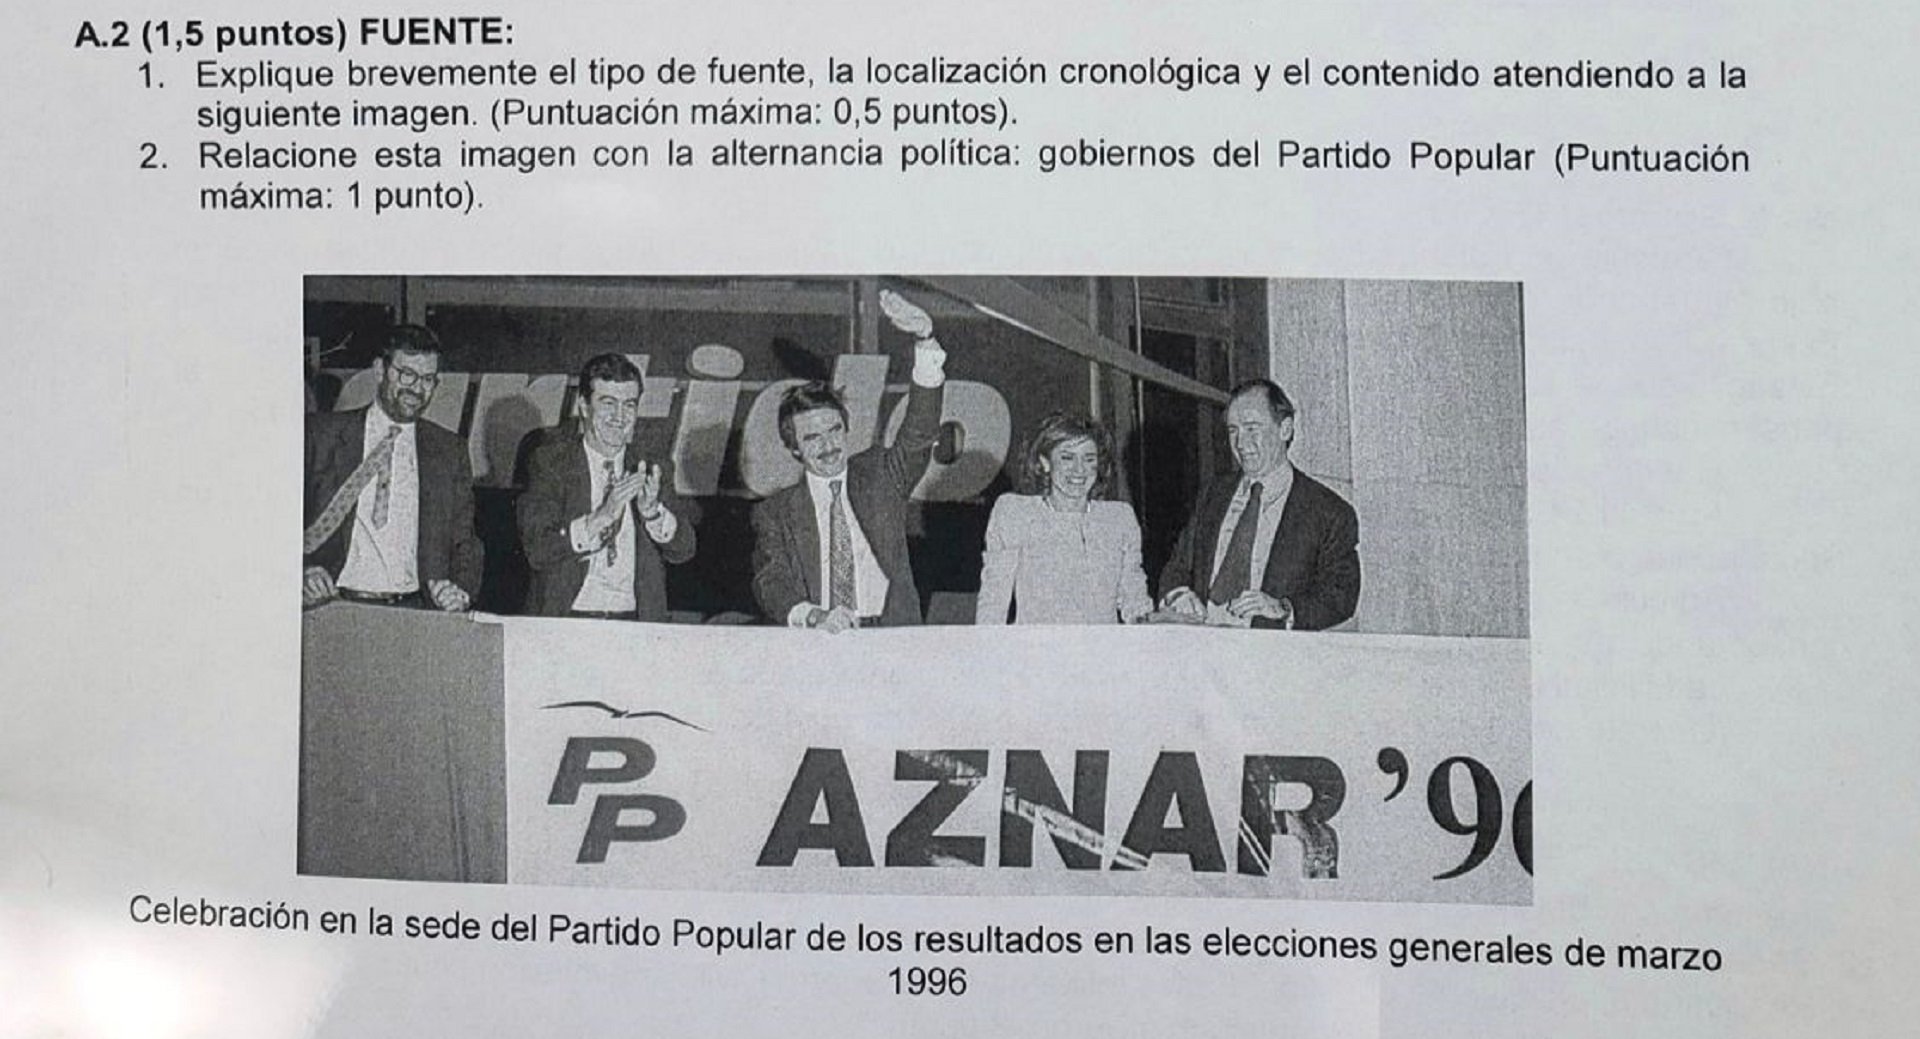 Polèmica amb l'examen d'història de l'EvAU de Madrid: una foto de la victòria d'Aznar en 1996